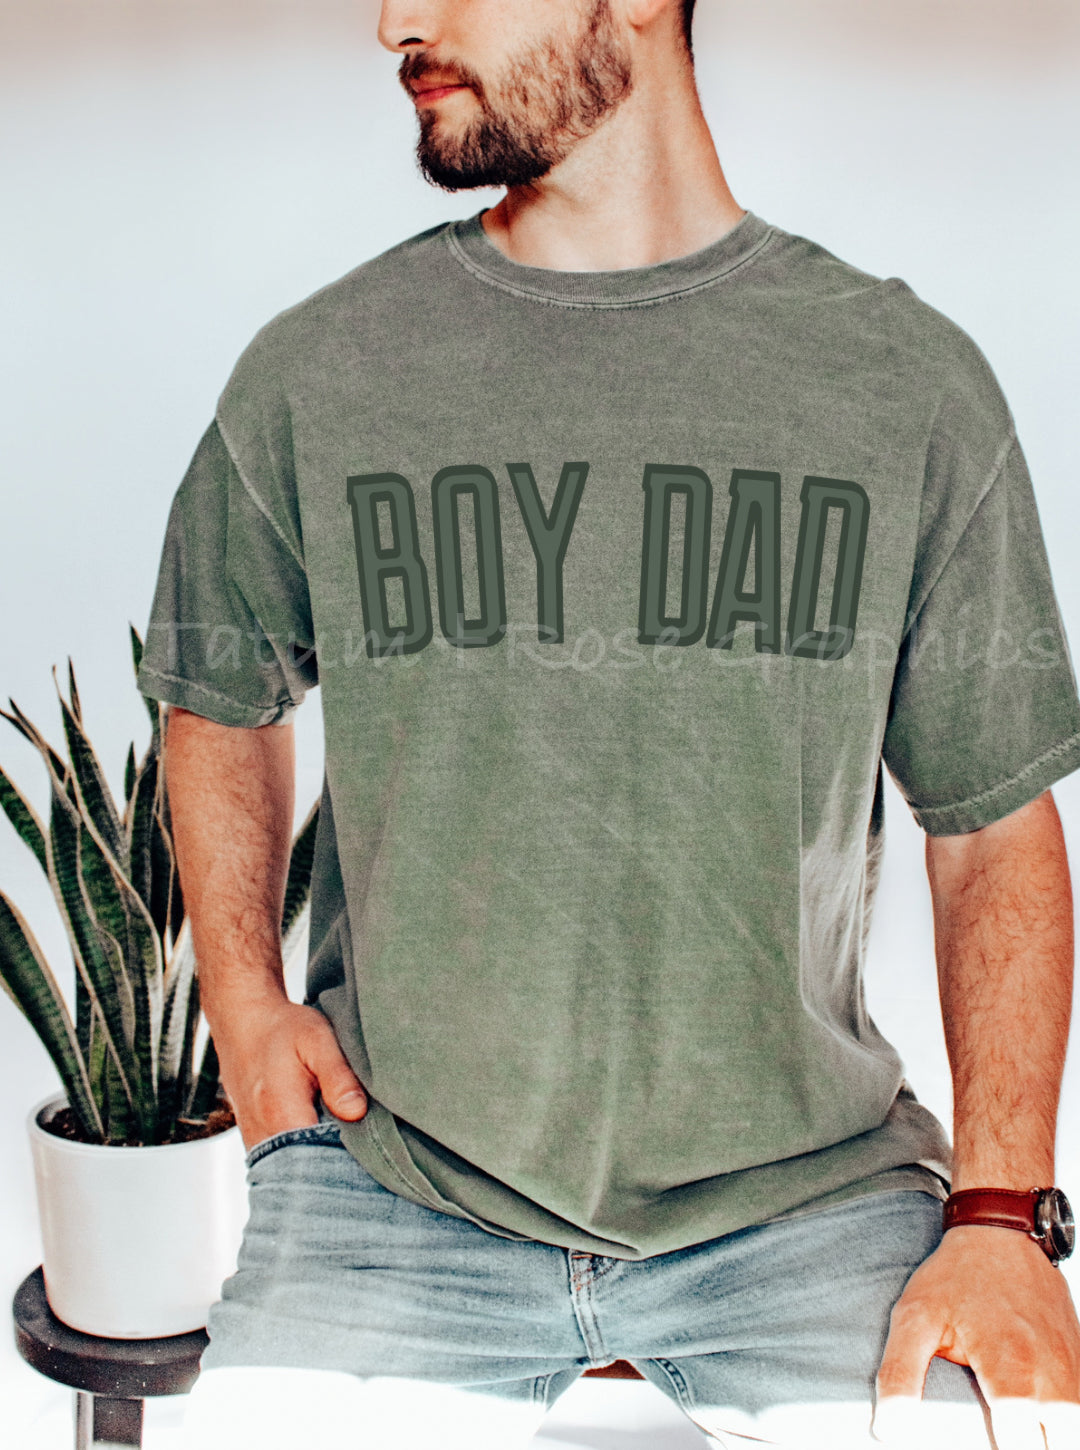 Boy Dad Tee - Moss